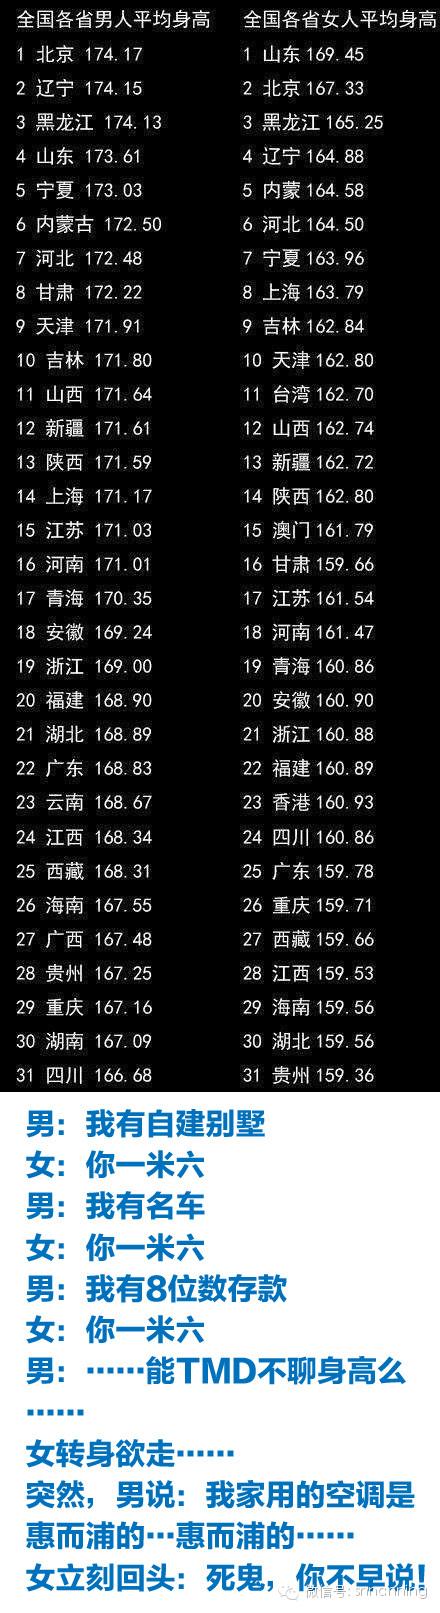 中国各省男女平均身高表的官方回应